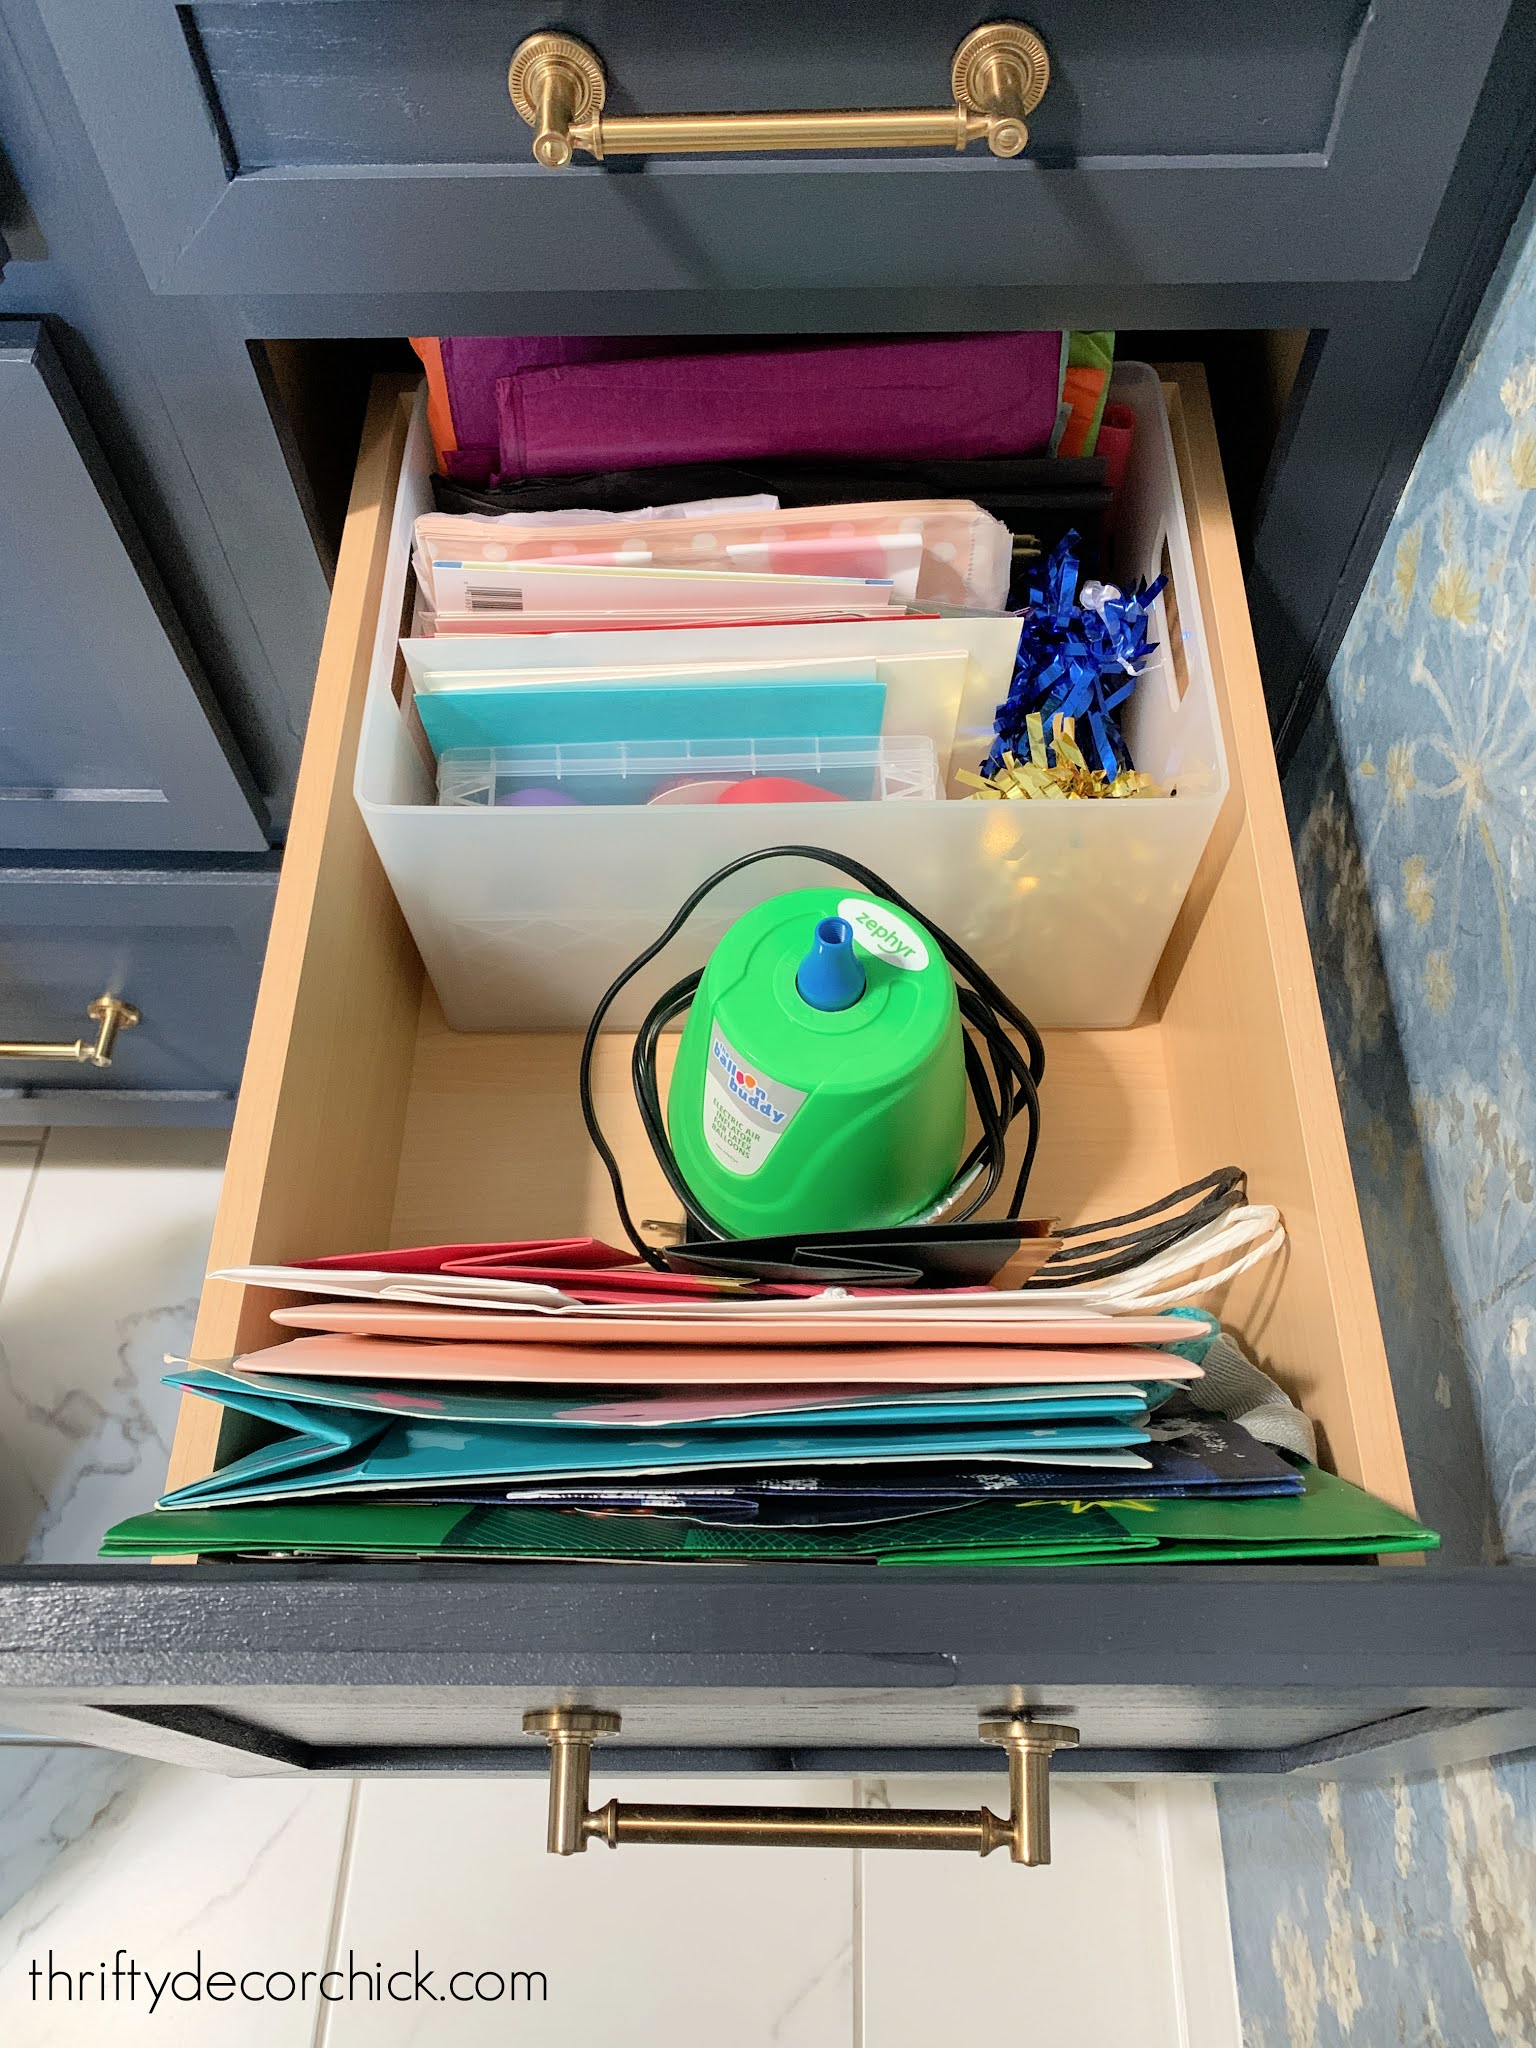 Organized Gift Wrap Shelf & Drawers - Simply Organized